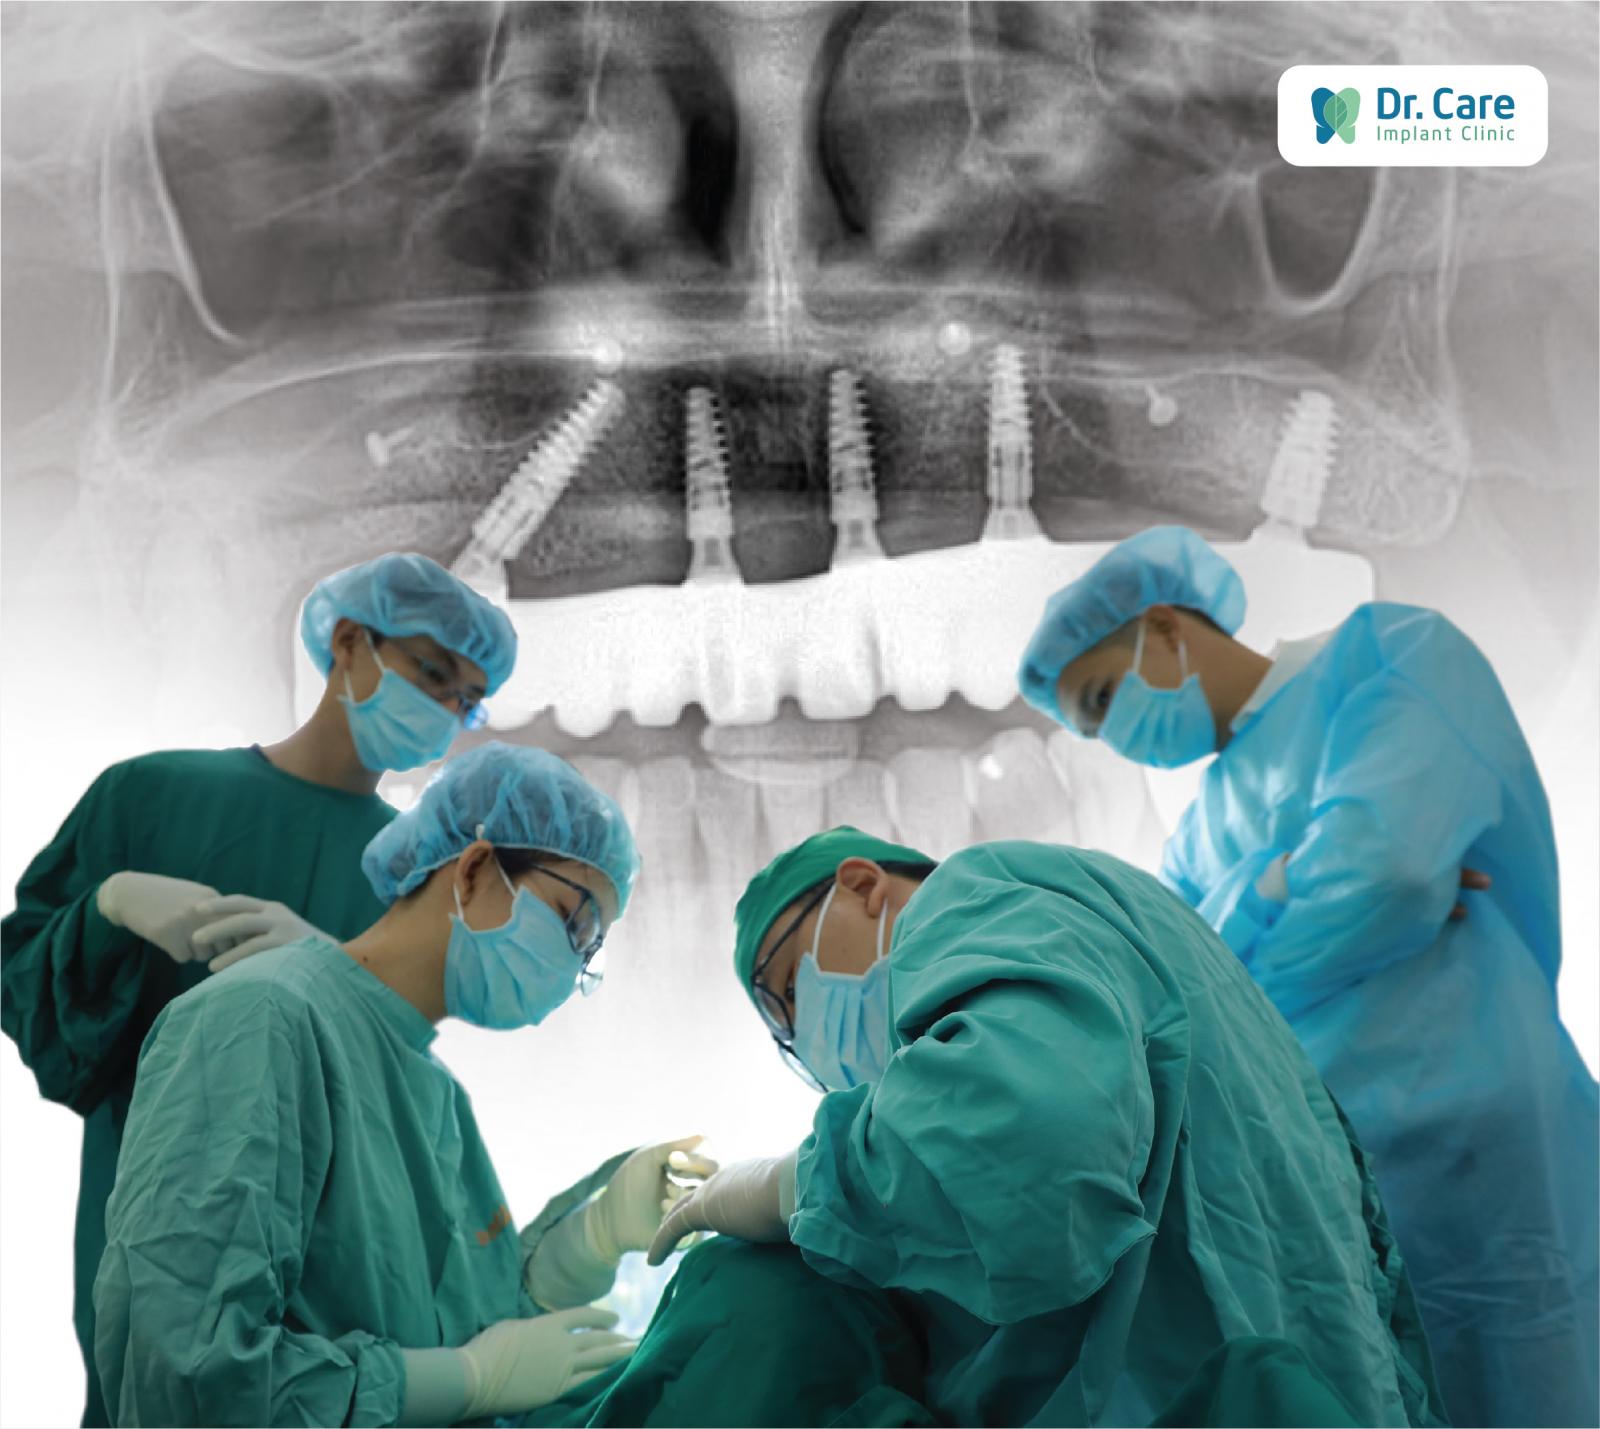 Kỹ thuật Socket Shield đòi hỏi bác sĩ thực hiện phải có chuyên môn cao, giàu kinh nghiệm, và đôi tay khéo léo để chẩn đoán chính xác tình trạng răng miệng của cô chú/anh chị và xác định chính xác tuyệt đối vị trí đặt Implant. 